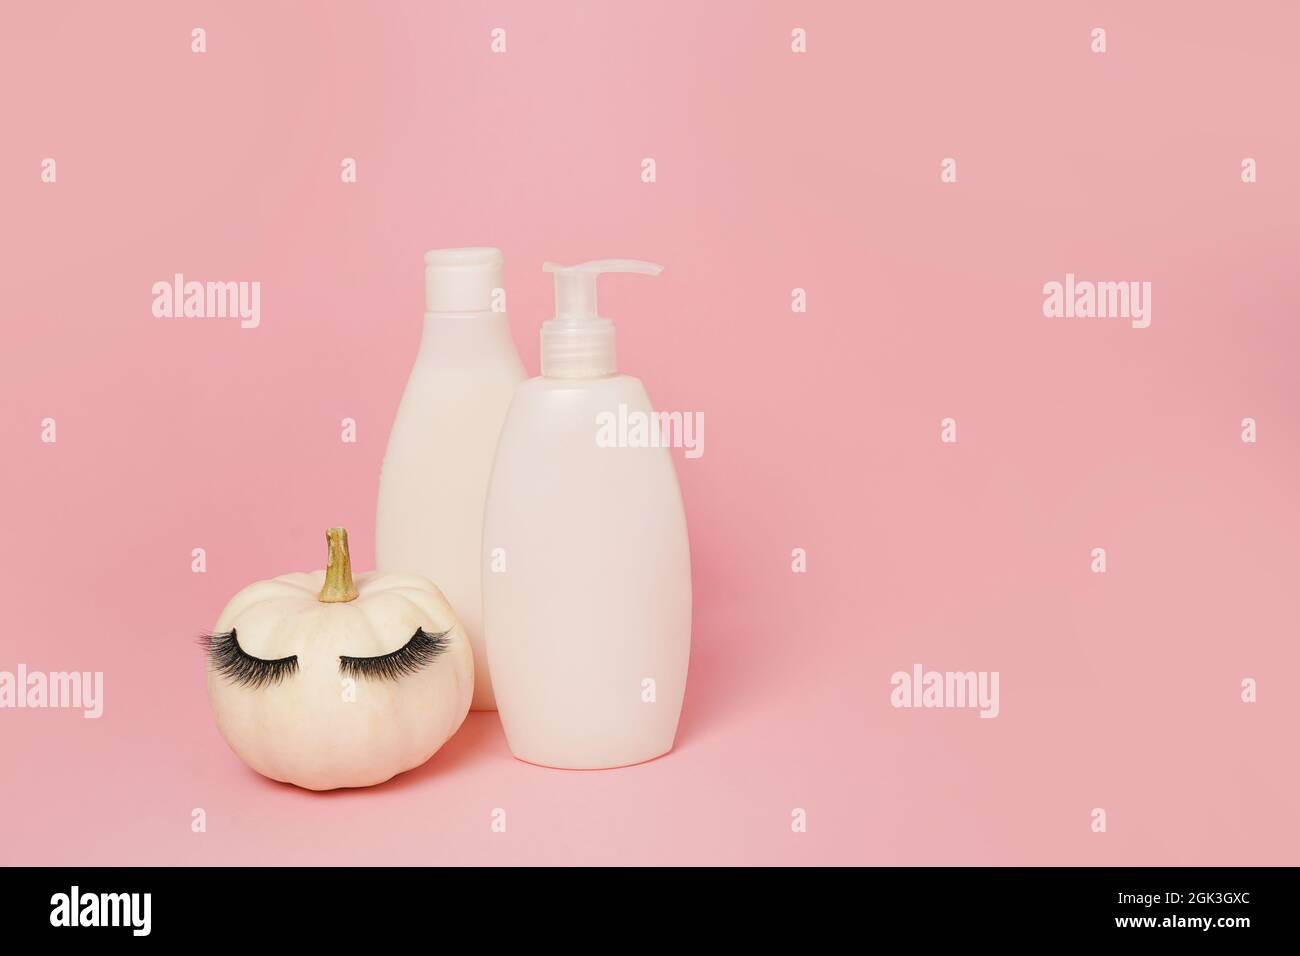 Kürbis mit falschen Wimpern und imitierten Kosmetikdosen Shampoo oder Gel auf rosa Hintergrund, natürliche Hautpflege im Herbst-Konzept Stockfoto